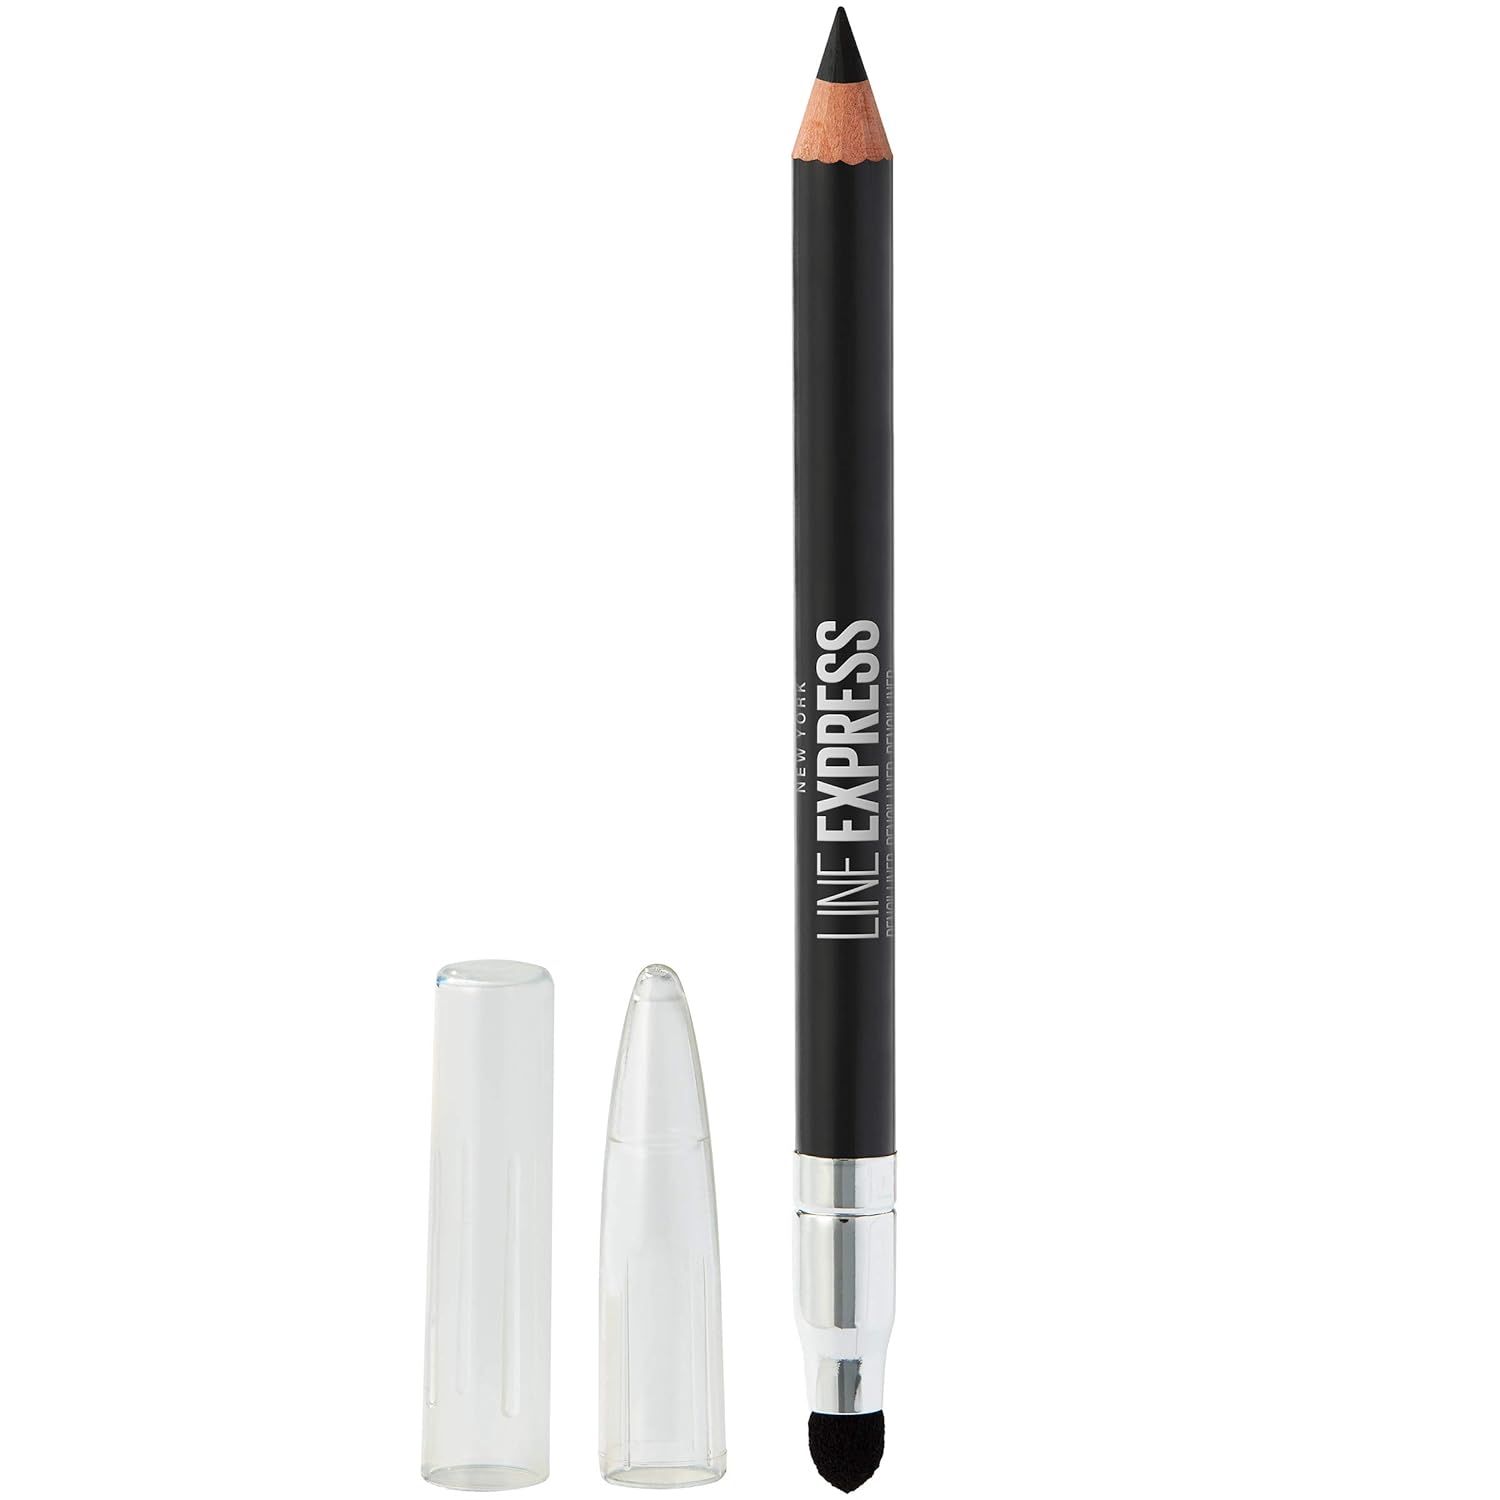 Maybelline Line Express Sharpenable Wood Pencil with Built-In Blending Smudger Tip Creamy Liner Eyeliner Eye Makeup, Soft Black, 0.035